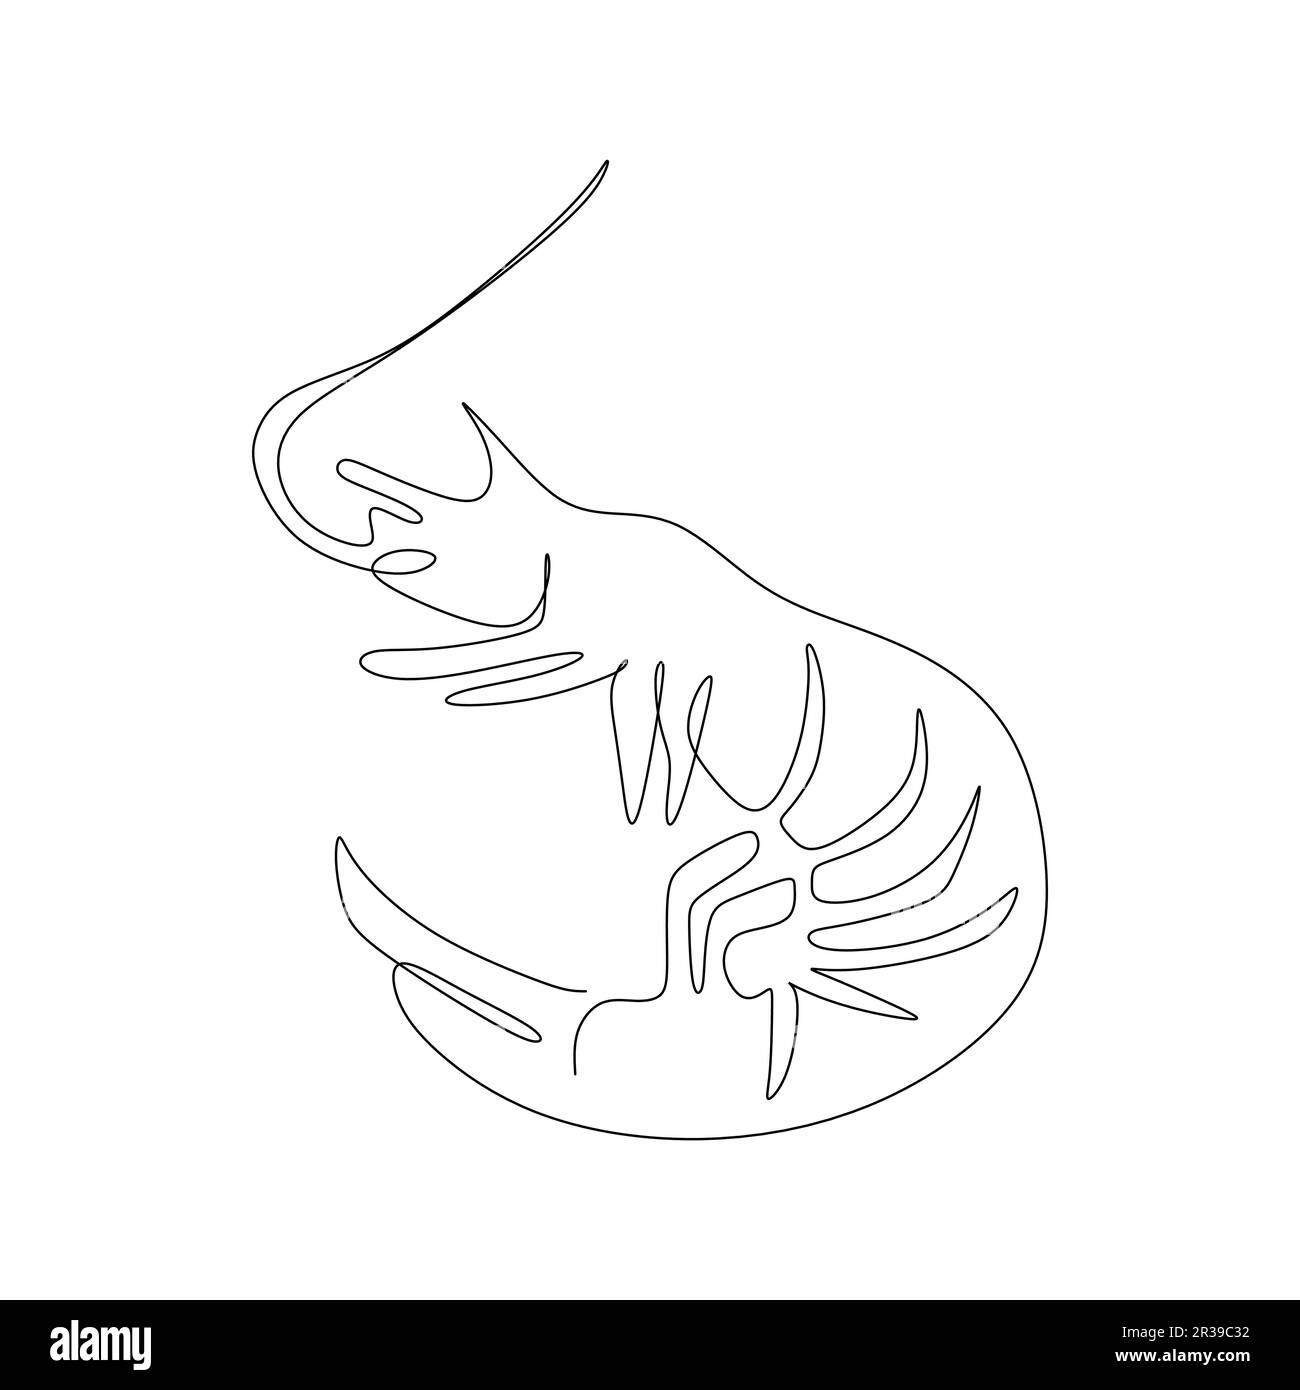 dessin de ligne continu de crevettes. Illustration vectorielle sur fond blanc. Illustration de Vecteur